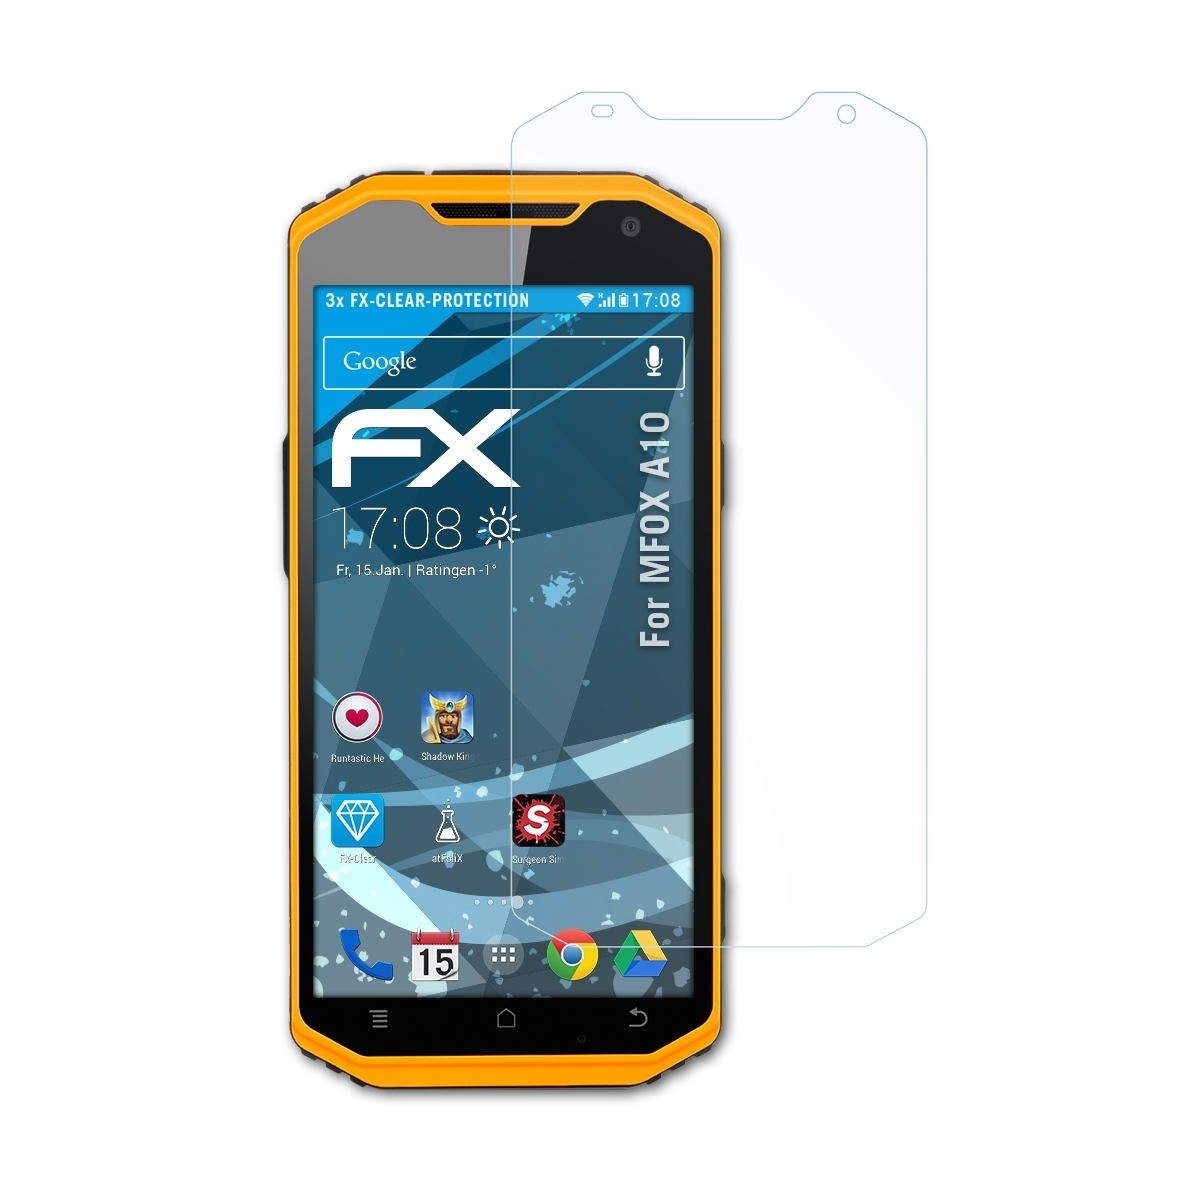 FX-Clear 3x A10) MFOX ATFOLIX Displayschutz(für